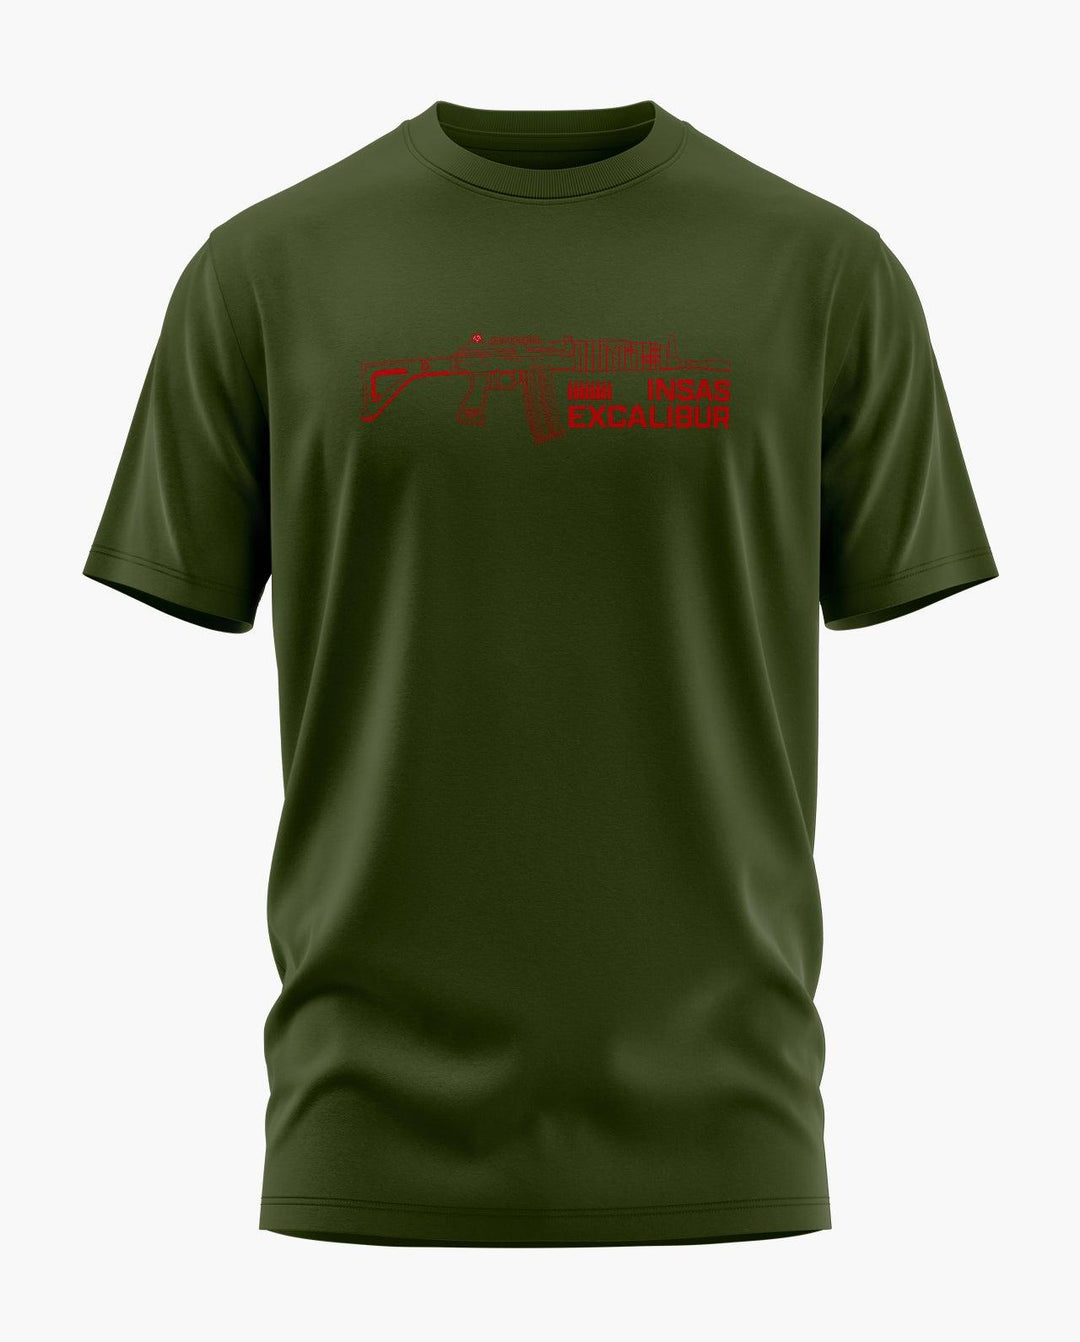 INSAS Excalibur T-Shirt - Aero Armour